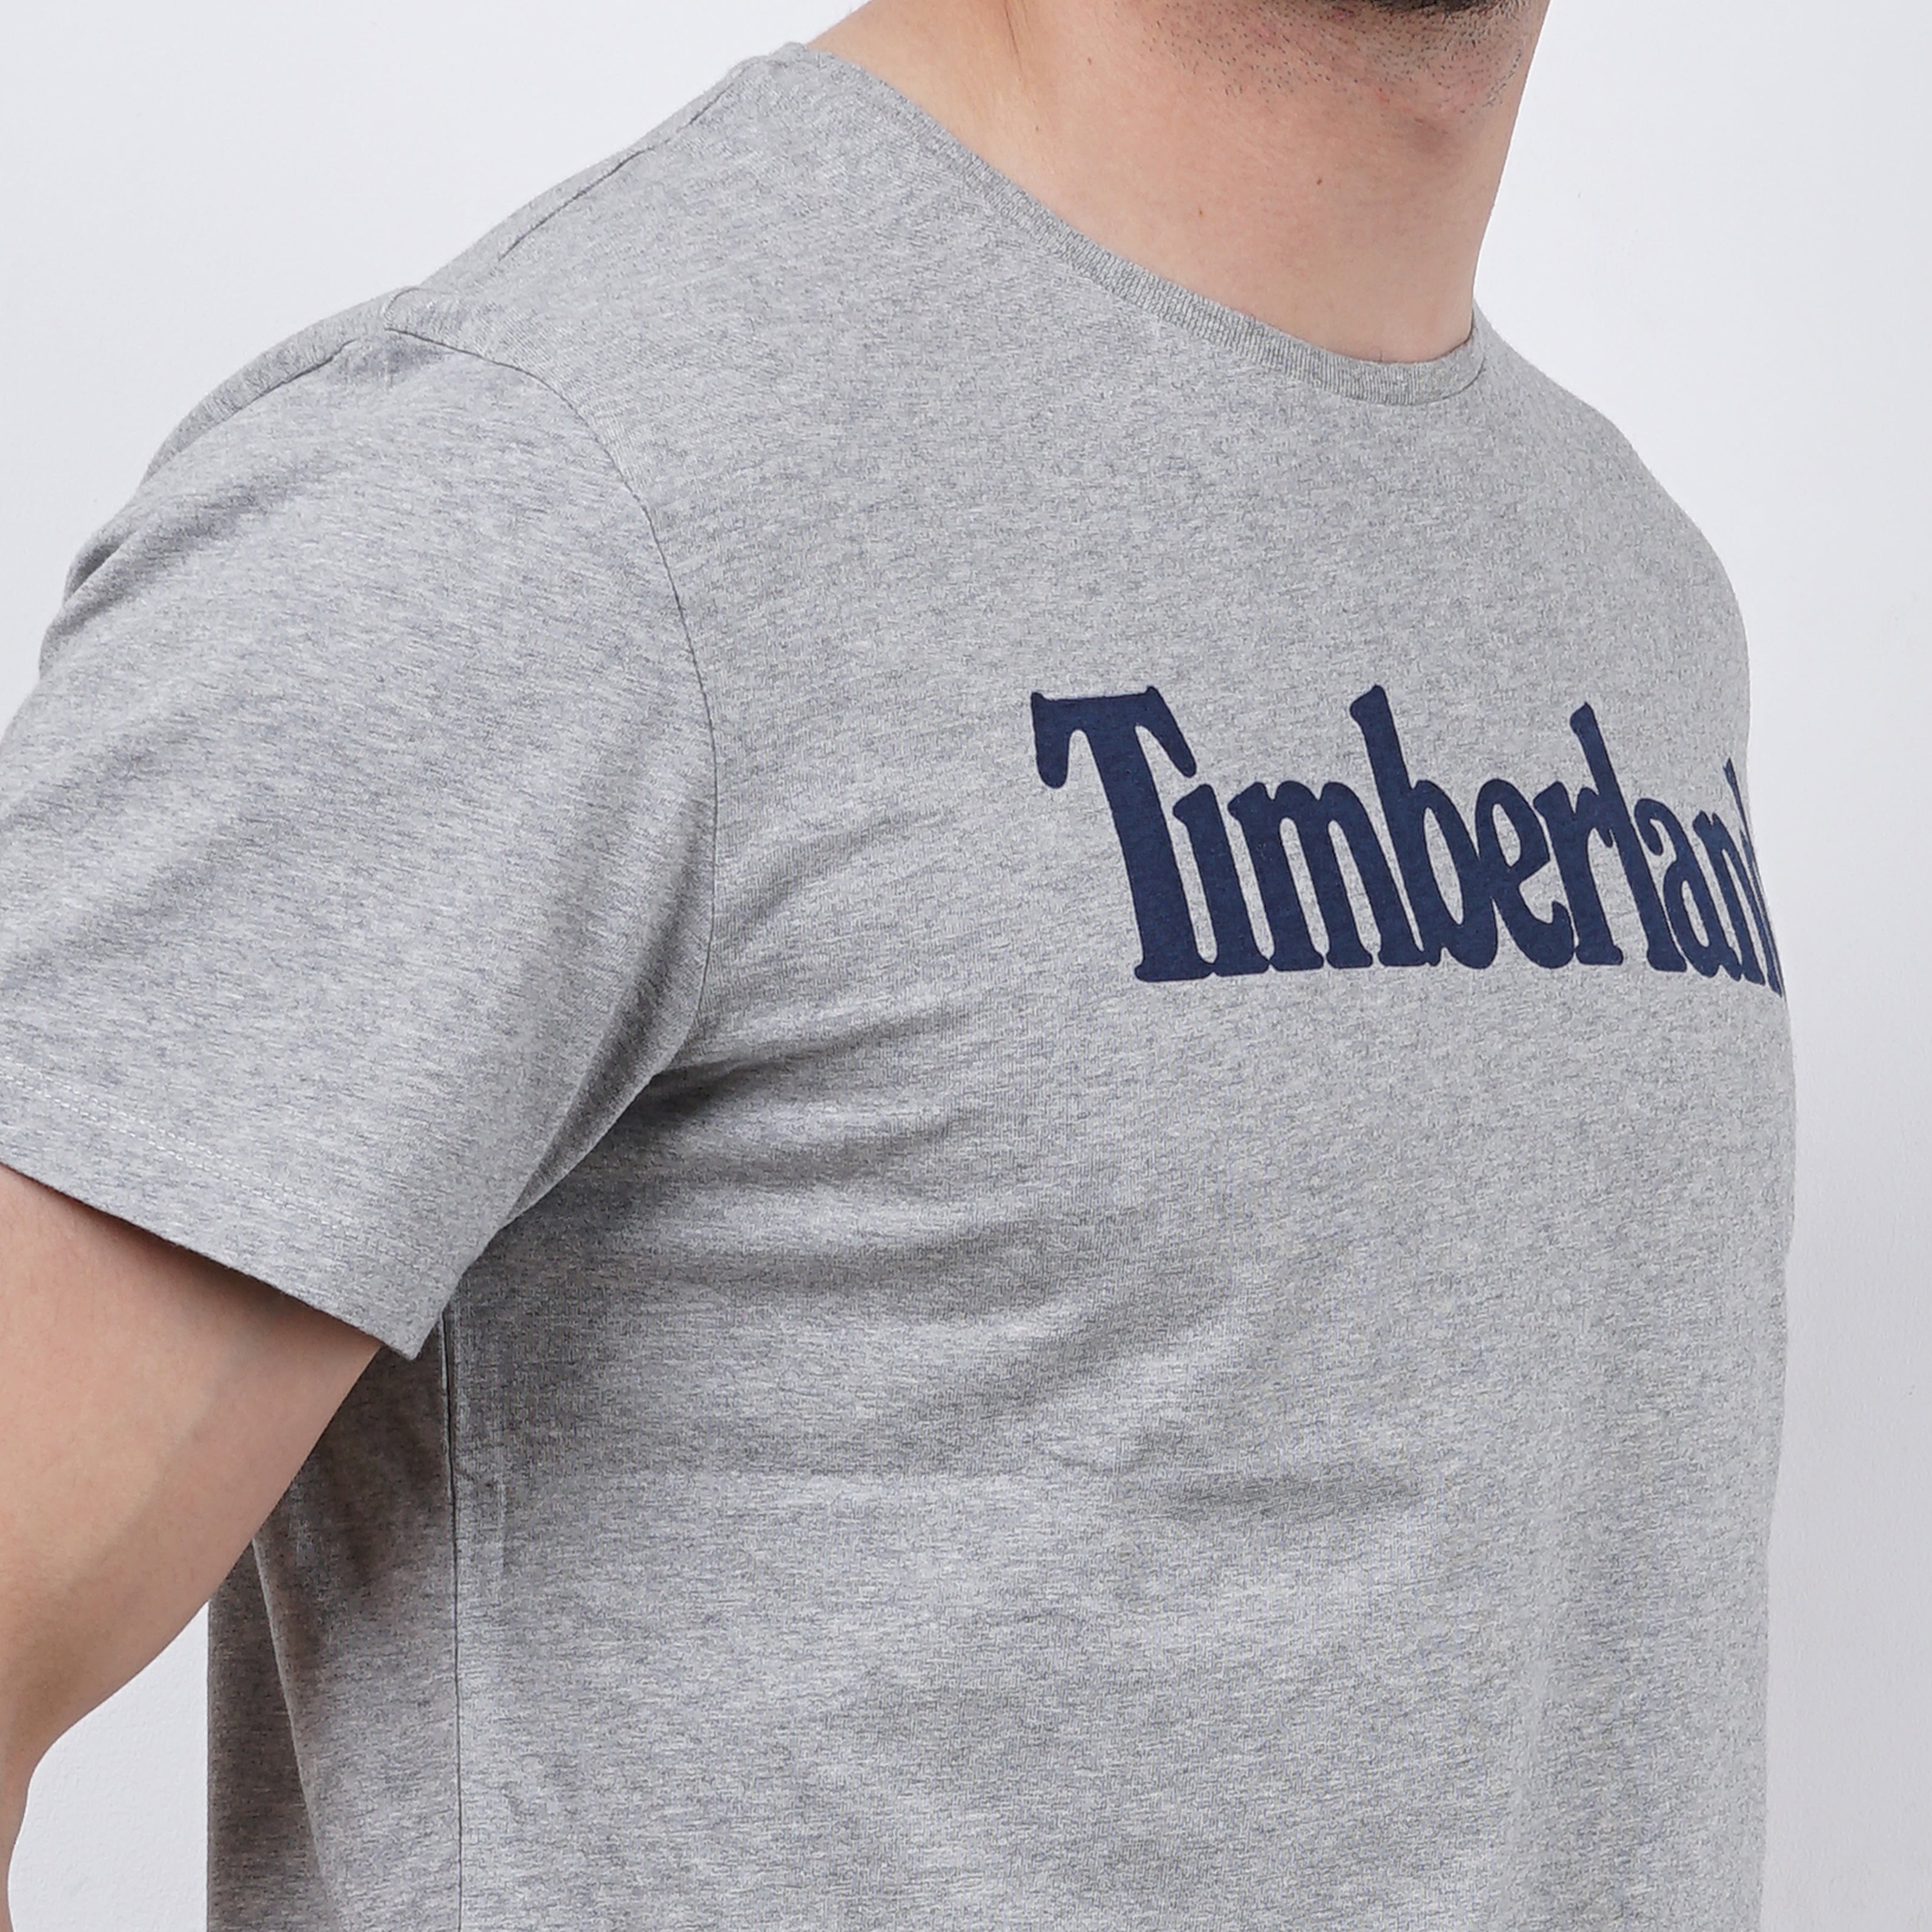 Timberland Logo Printed Tee - Marca Deals - Timberland